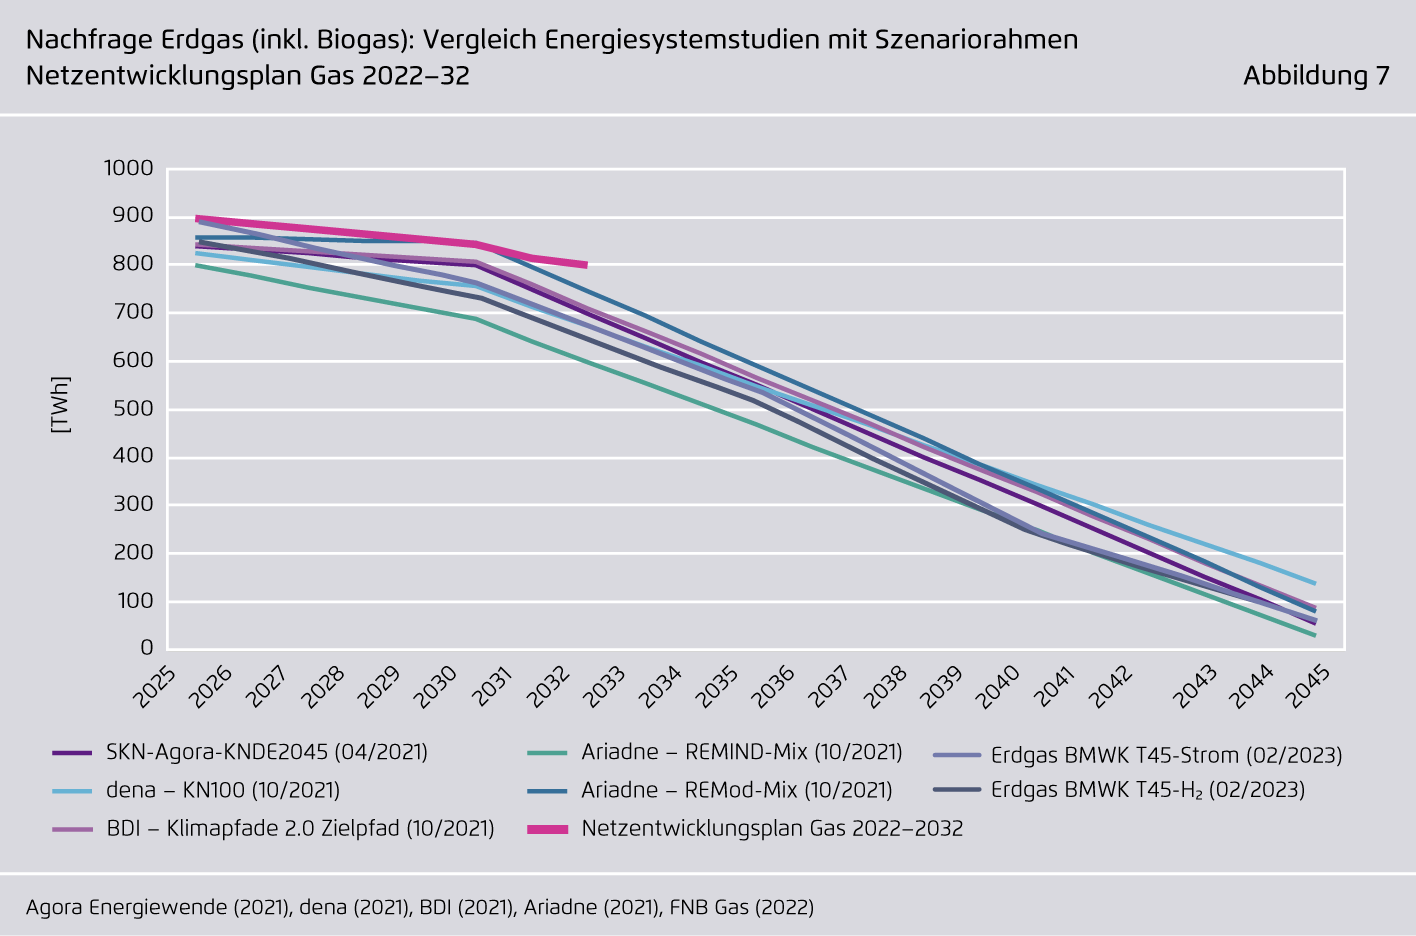 Preview for Nachfrage Erdgas (inkl. Biogas): Vergleich Energiesystemstudien mit Szenariorahmen Netzentwicklungsplan Gas 2022–32